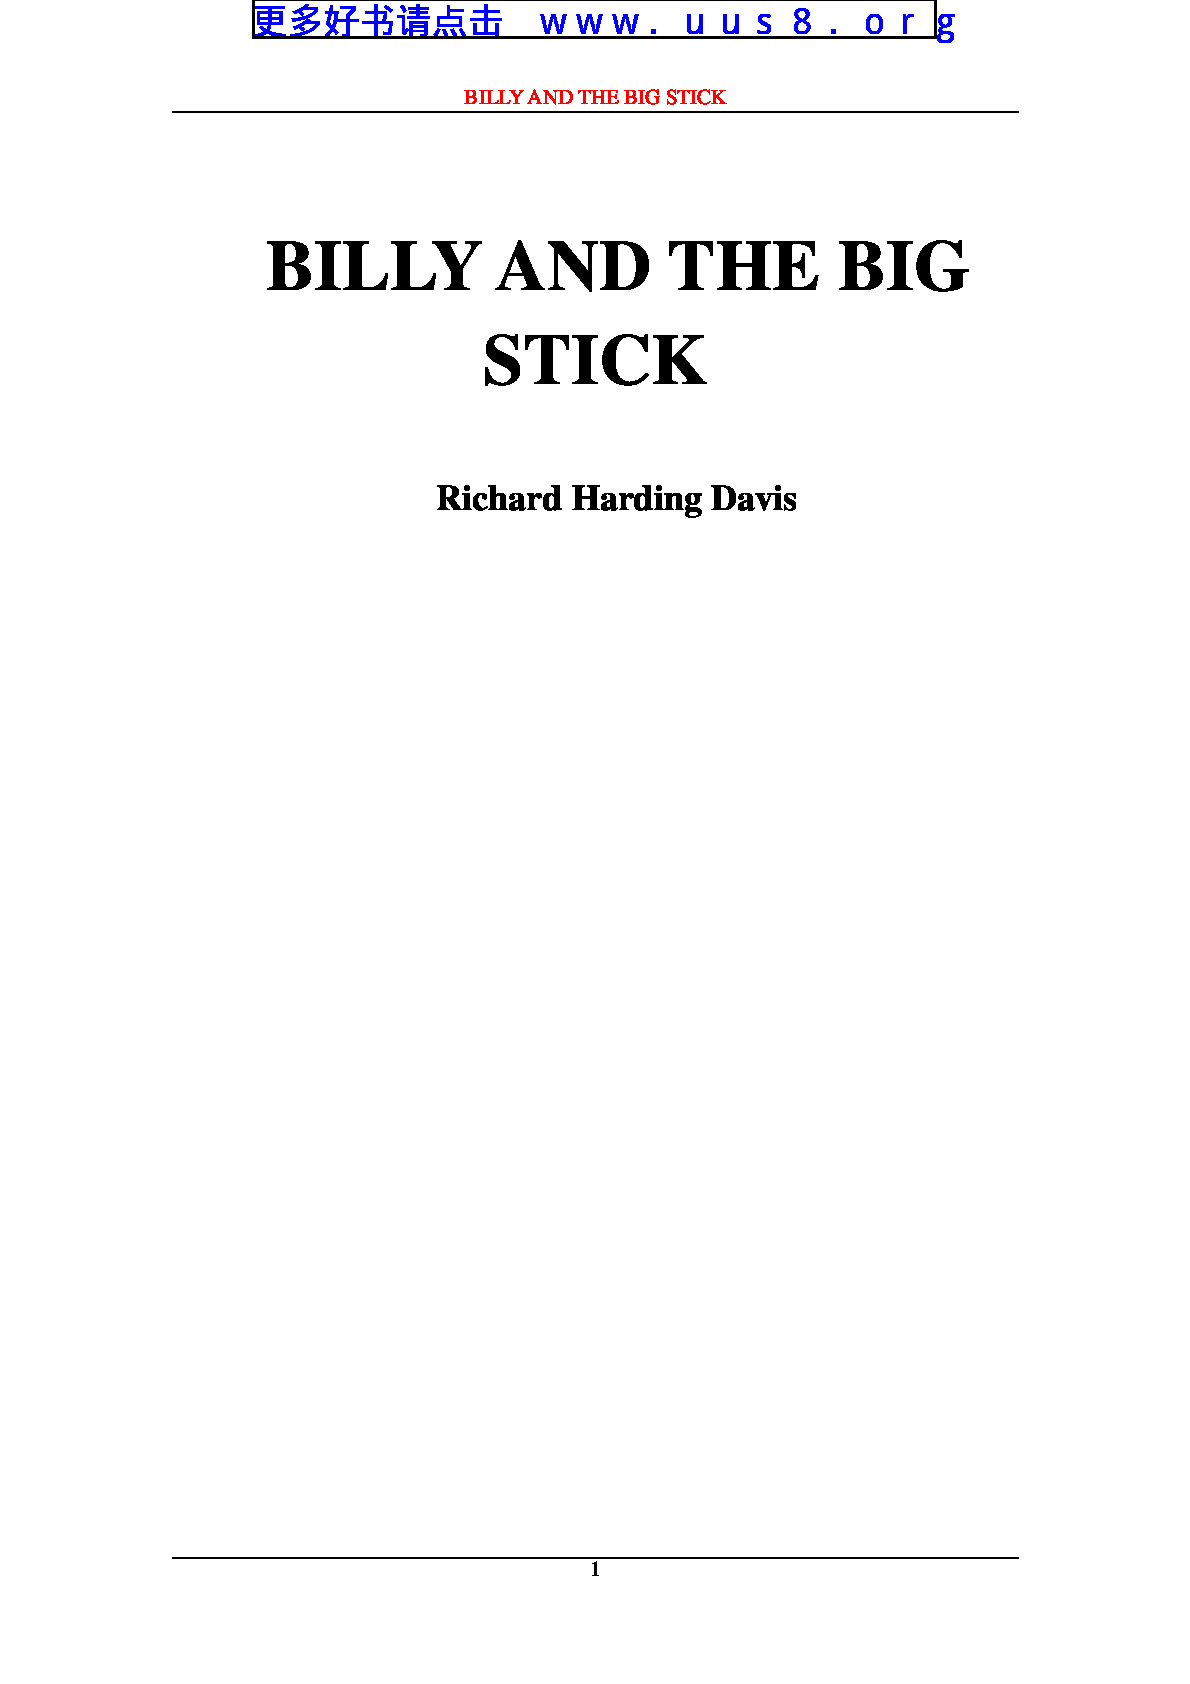 billy_and_the_big_stick(比利和粗棍子)